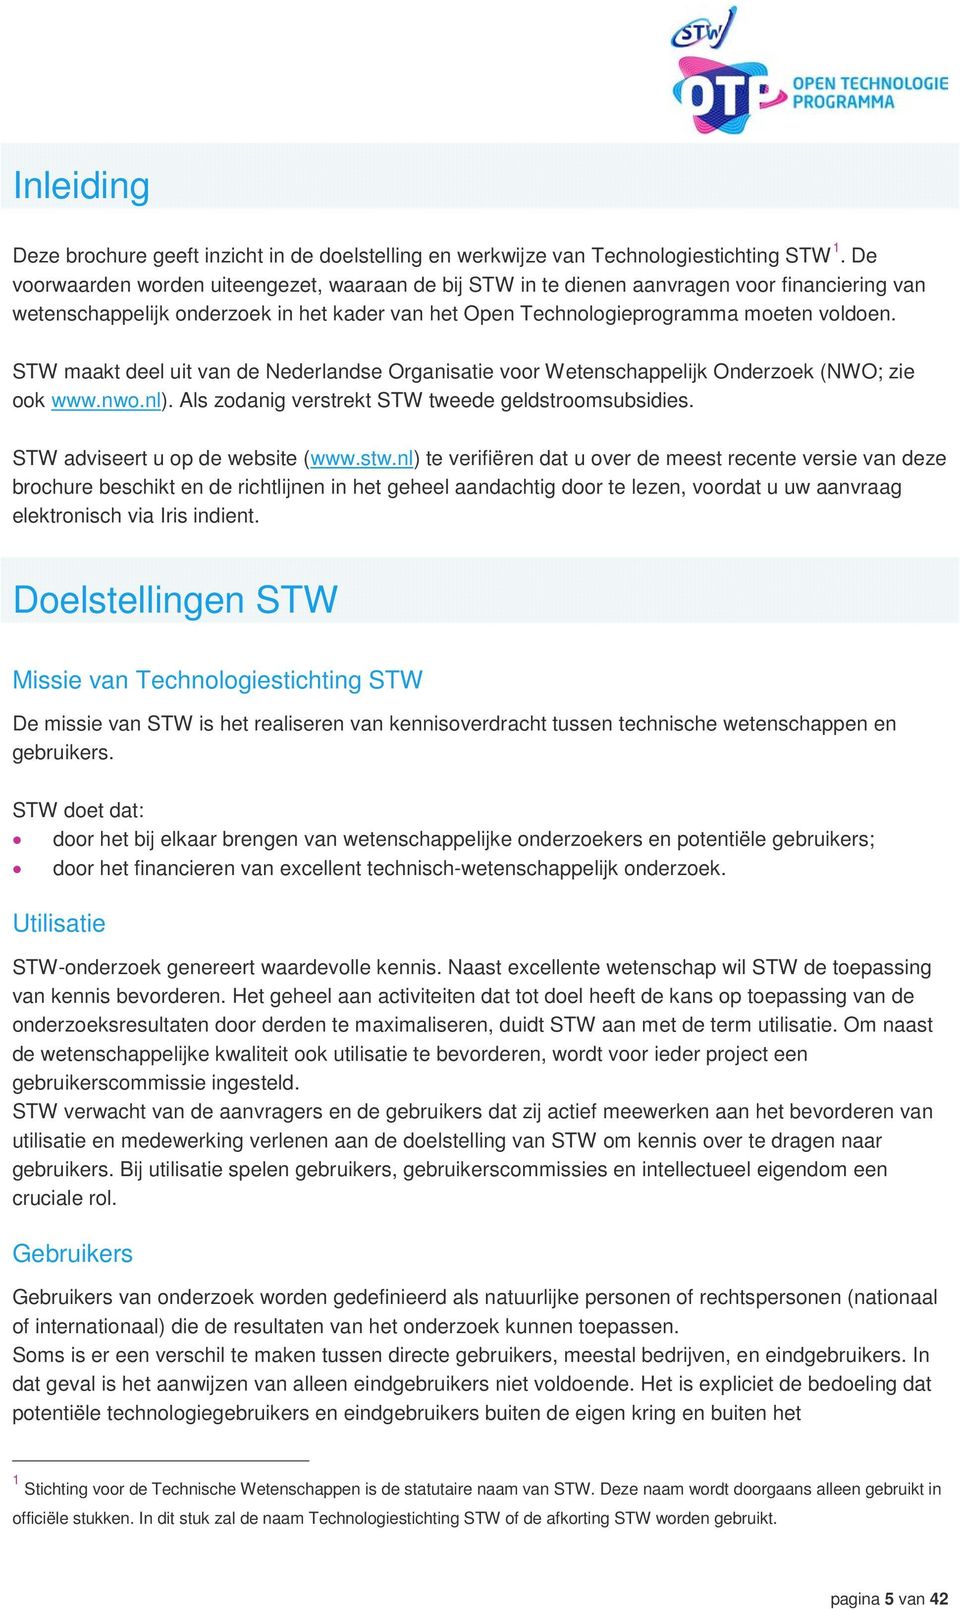 STW maakt deel uit van de Nederlandse Organisatie voor Wetenschappelijk Onderzoek (NWO; zie ook www.nwo.nl). Als zodanig verstrekt STW tweede geldstroomsubsidies. STW adviseert u op de website (www.